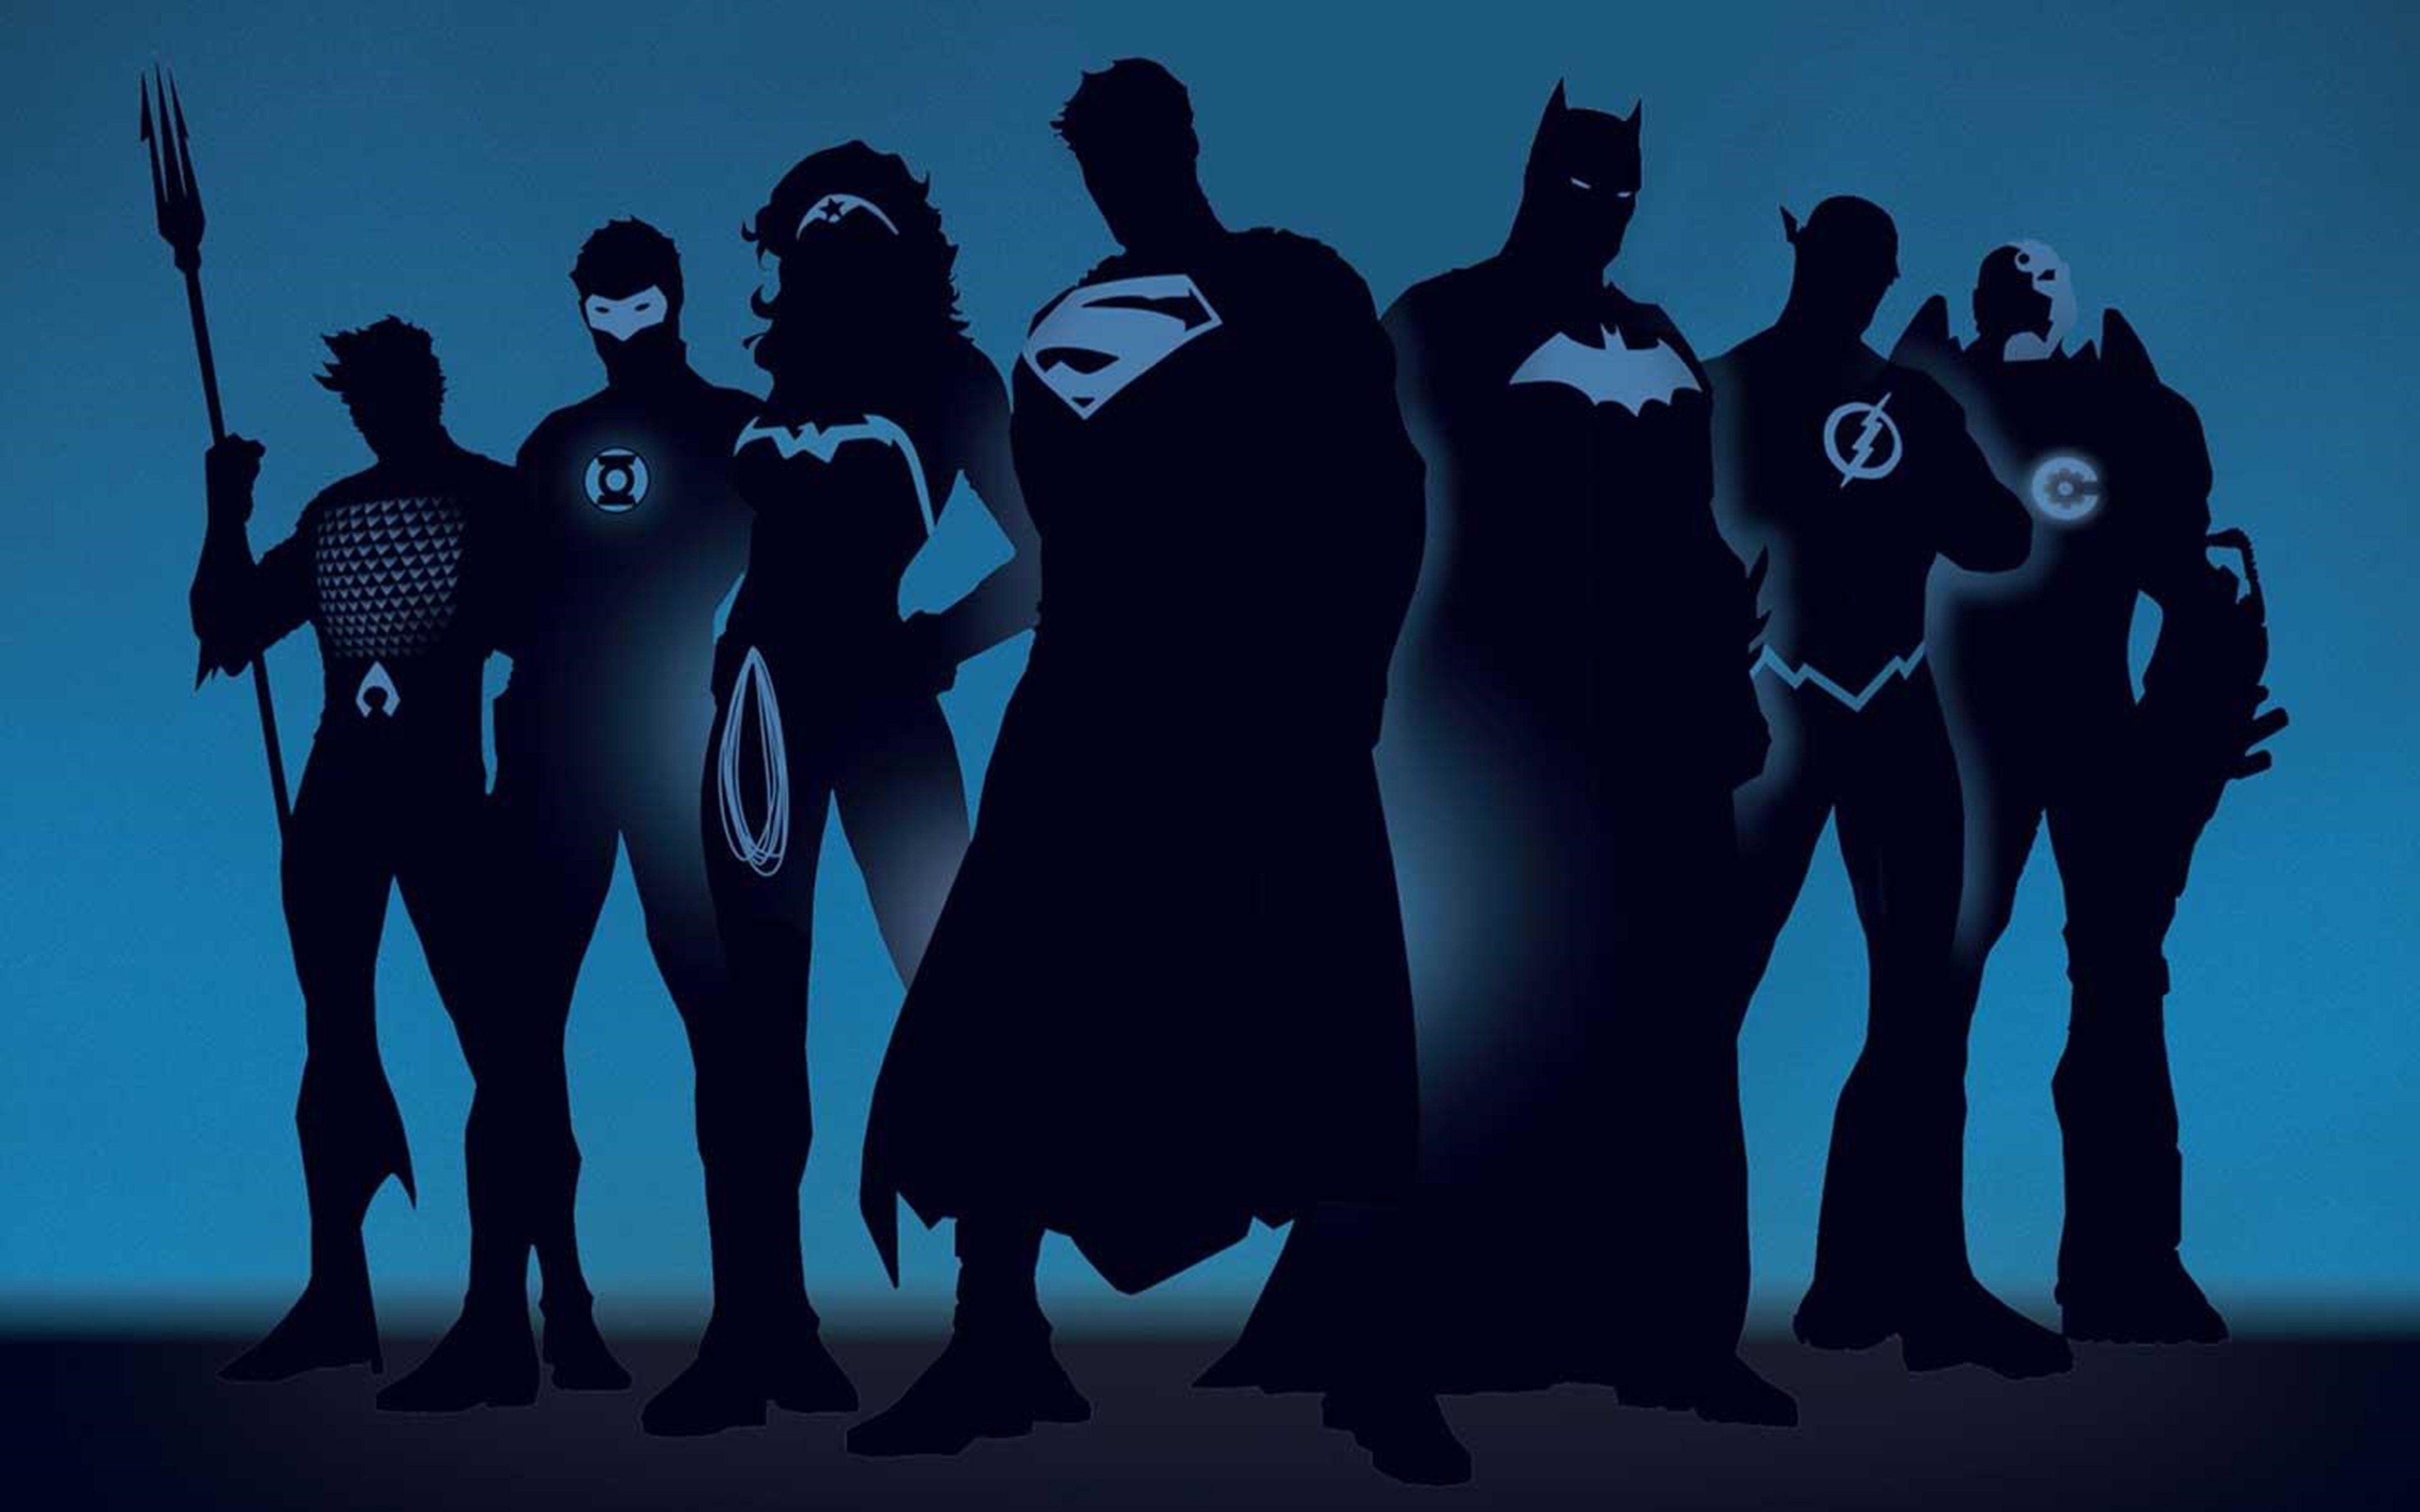 Dc-comics justice-league superheroes comics wallpaper | 4000x2500 ...